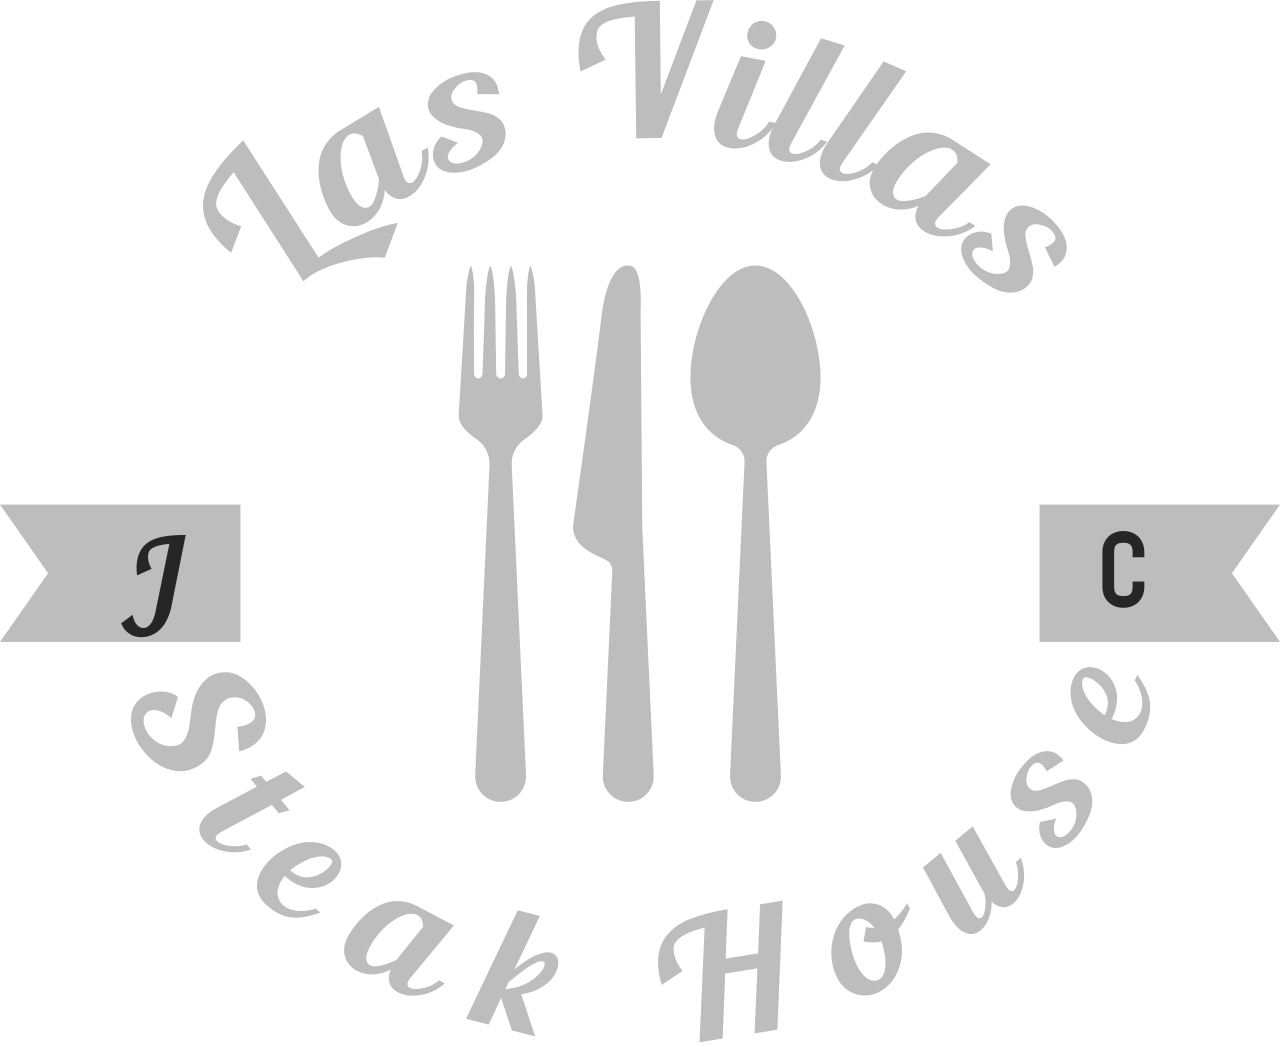 Las Villas's web page